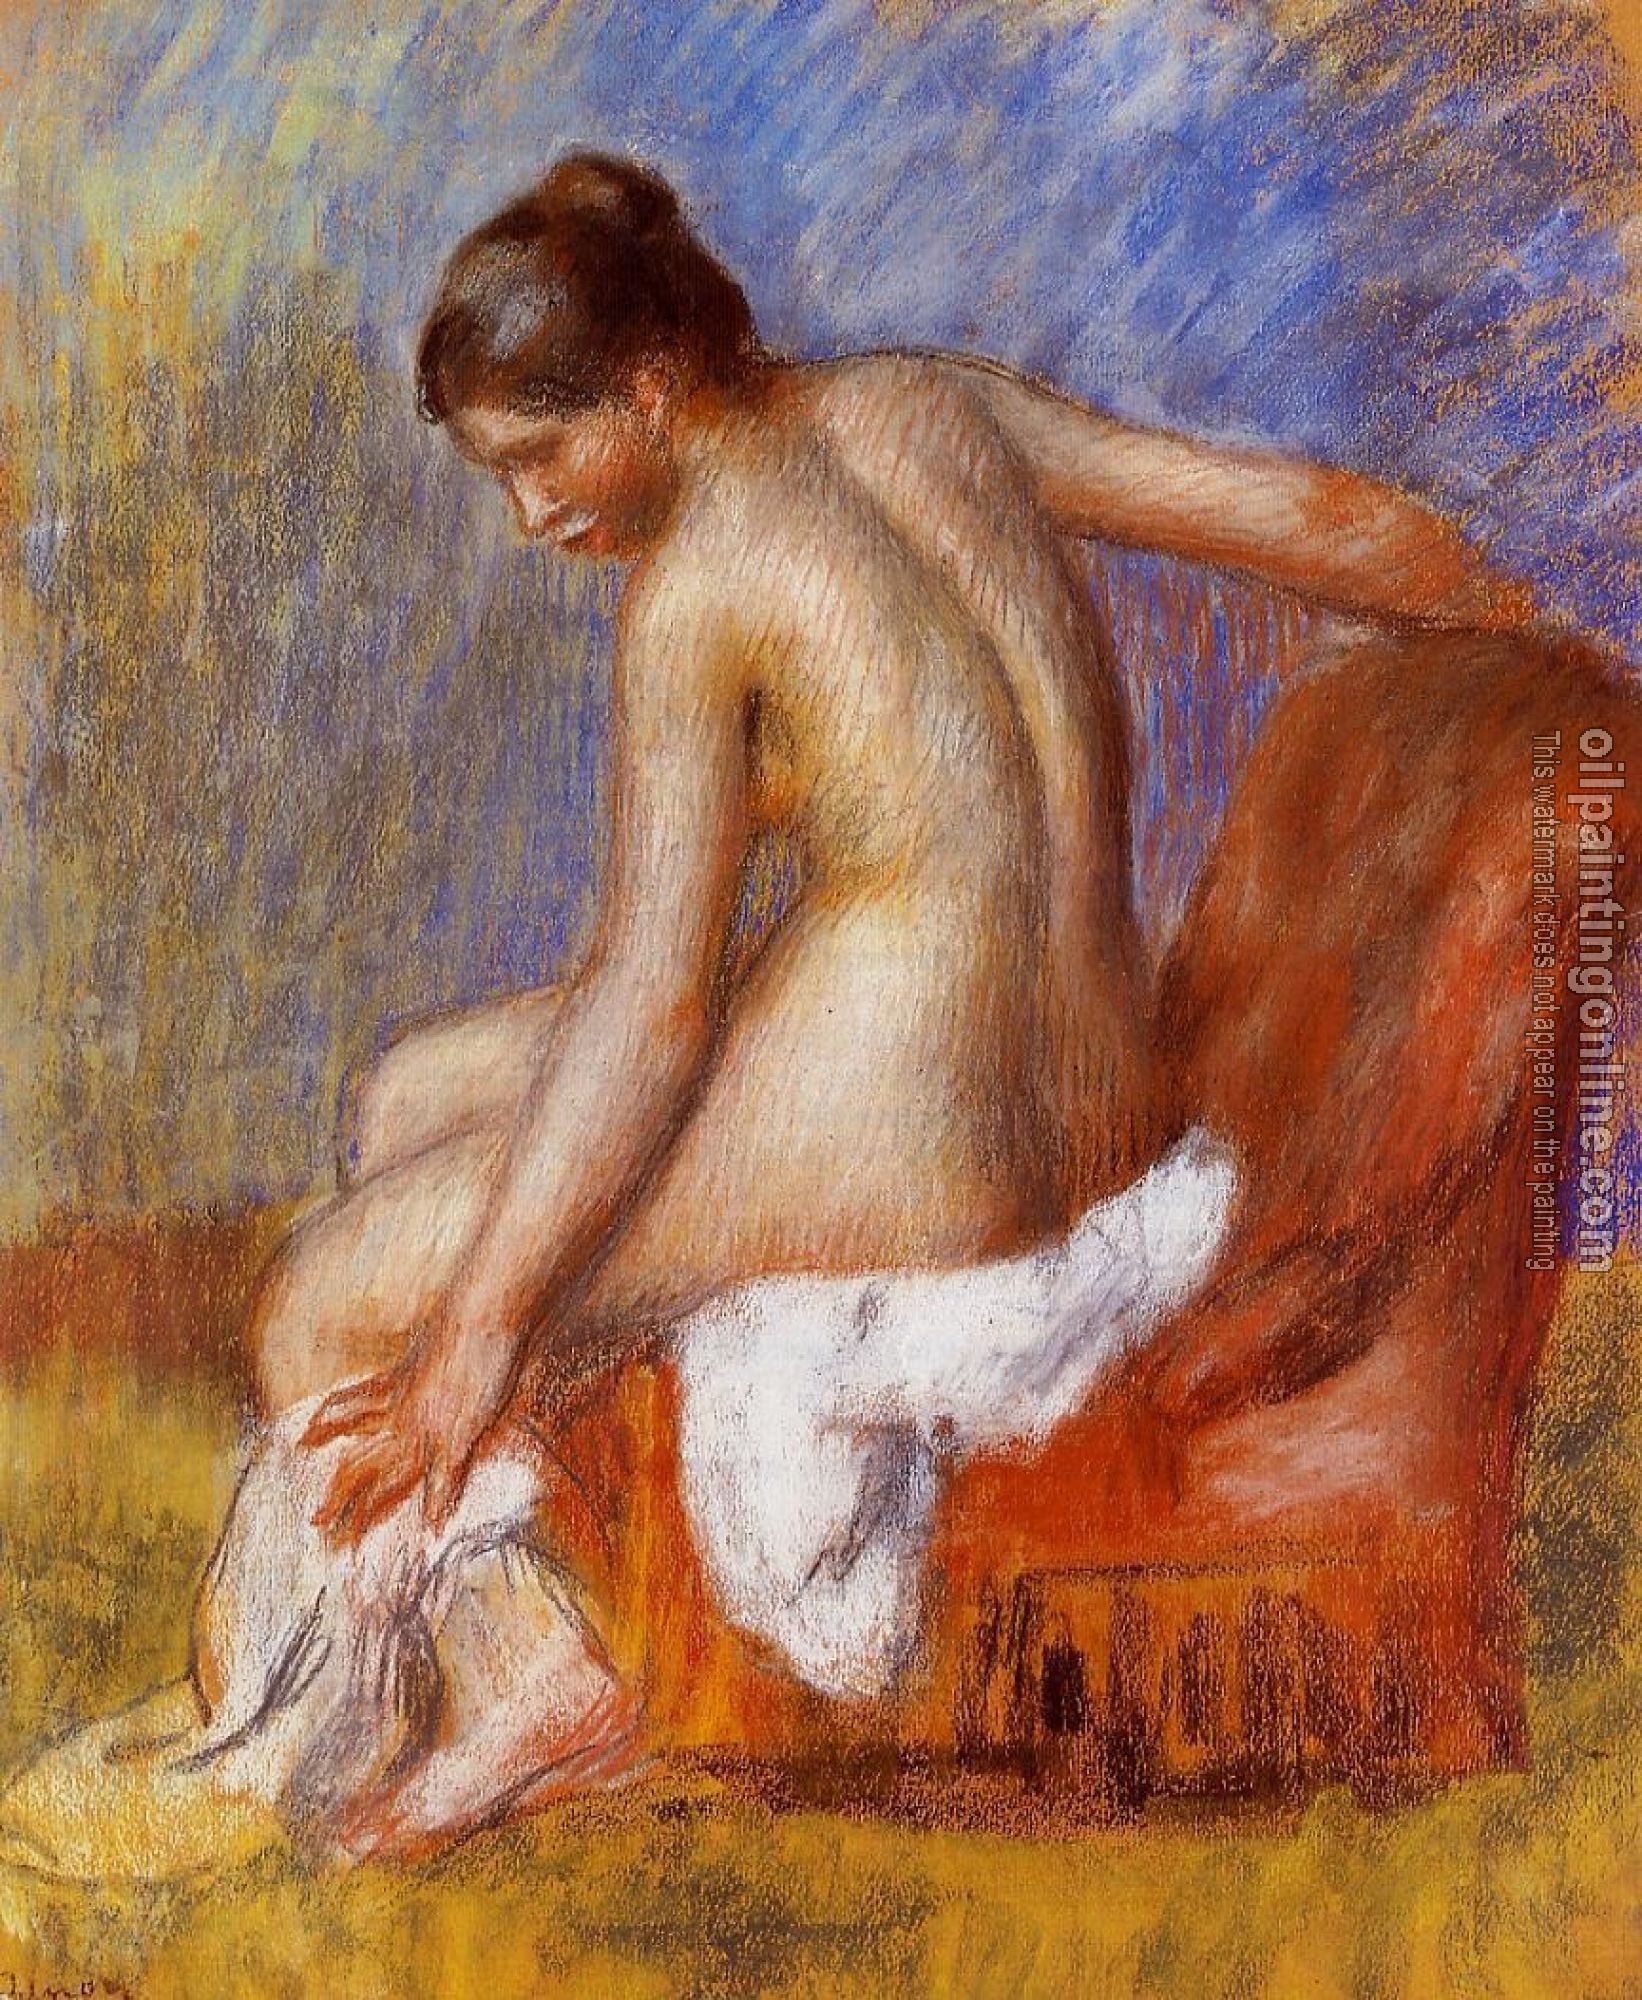 Renoir, Pierre Auguste - Nude in an Armchair